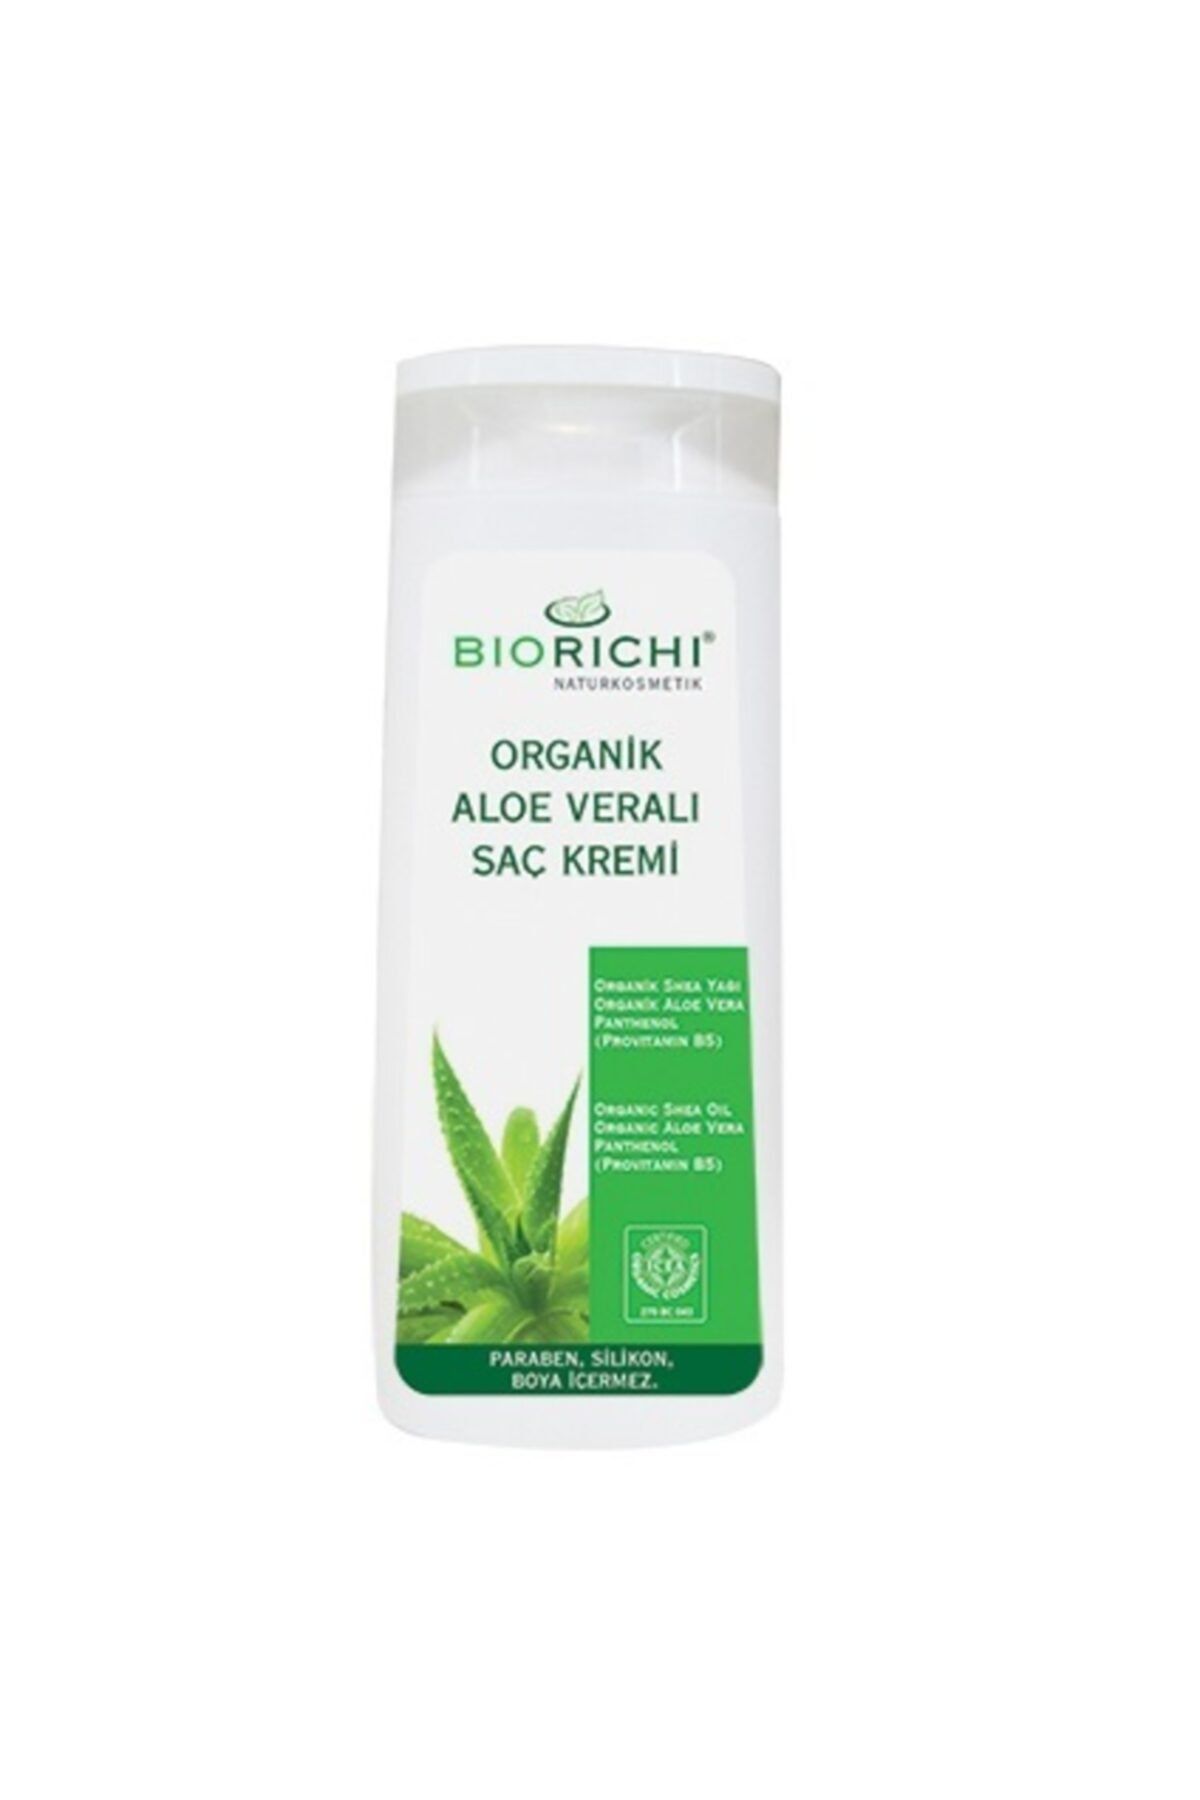 Biorichi Organik Aloe Veralı Saç Kremi 300ml